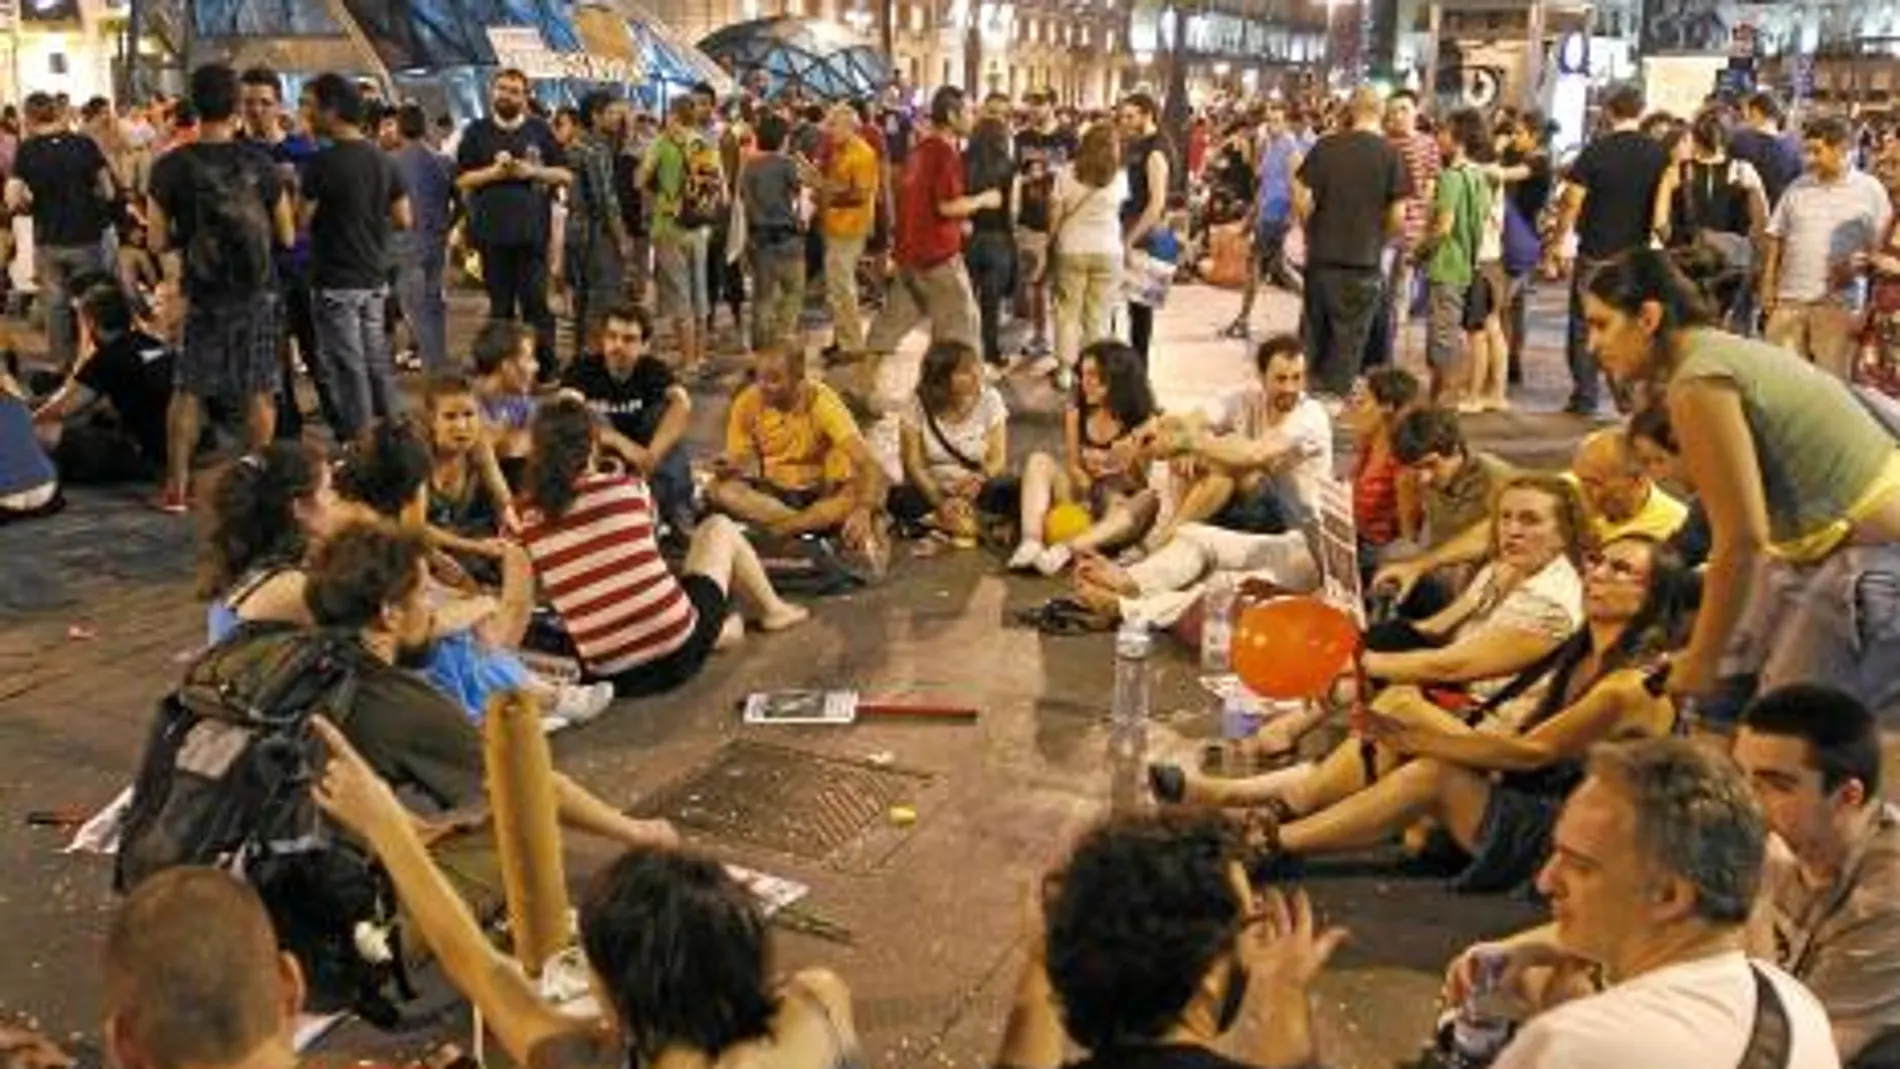 El movimiento 15-M ha intentado ocupar otros lugares de Madrid desde que fueran desalojados de la Puerta del Sol tras semanas acampados